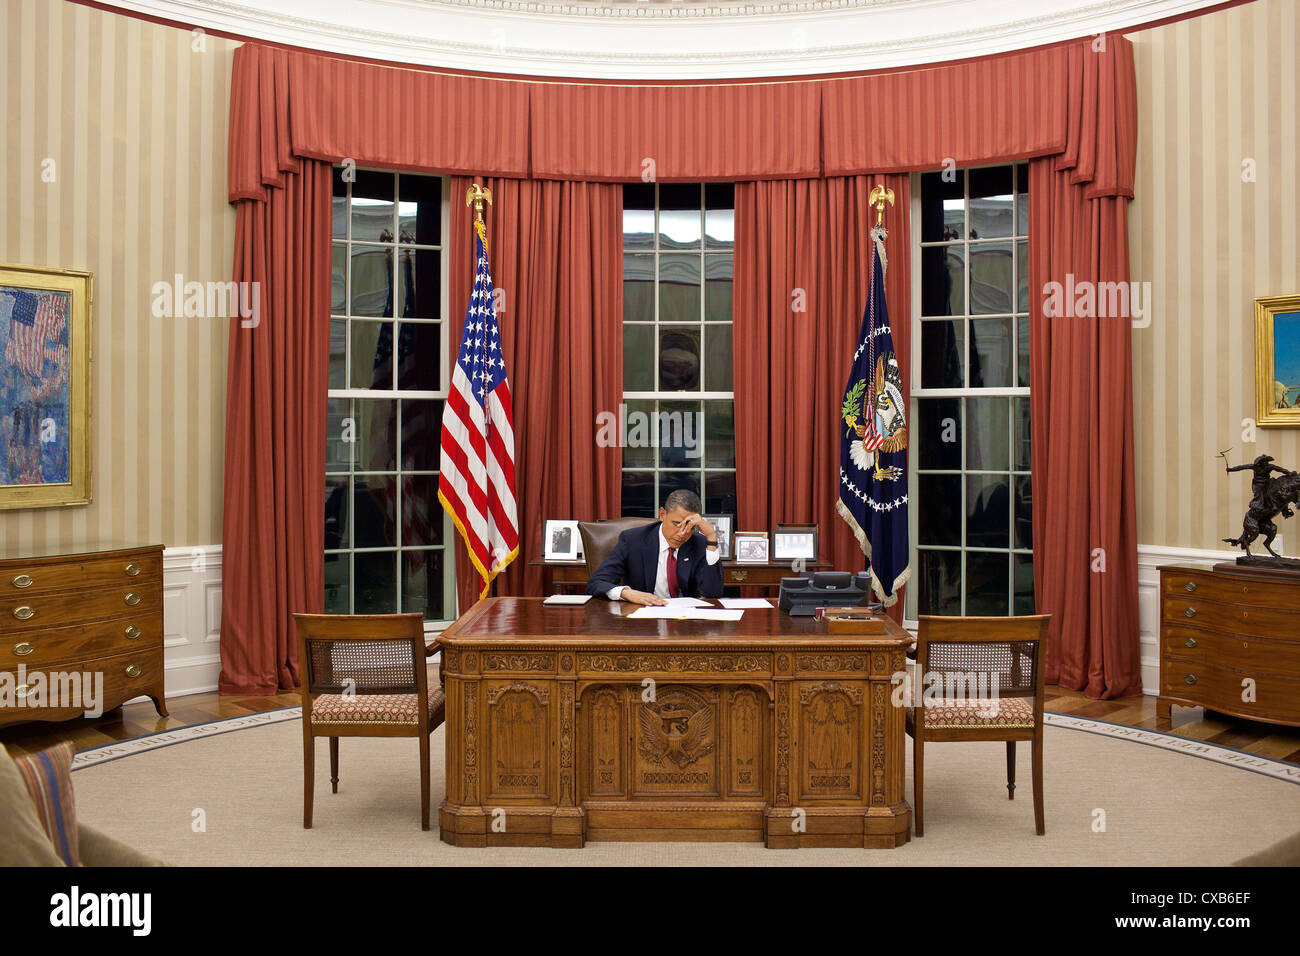 Präsident Barack Obama bearbeitet seine Äußerungen 1. Mai 2011 im Oval Office in Washington vor Abgabe einer im Fernsehen übertragenen Erklärung Detaillierung der Mission gegen Osama bin Laden. Stockfoto